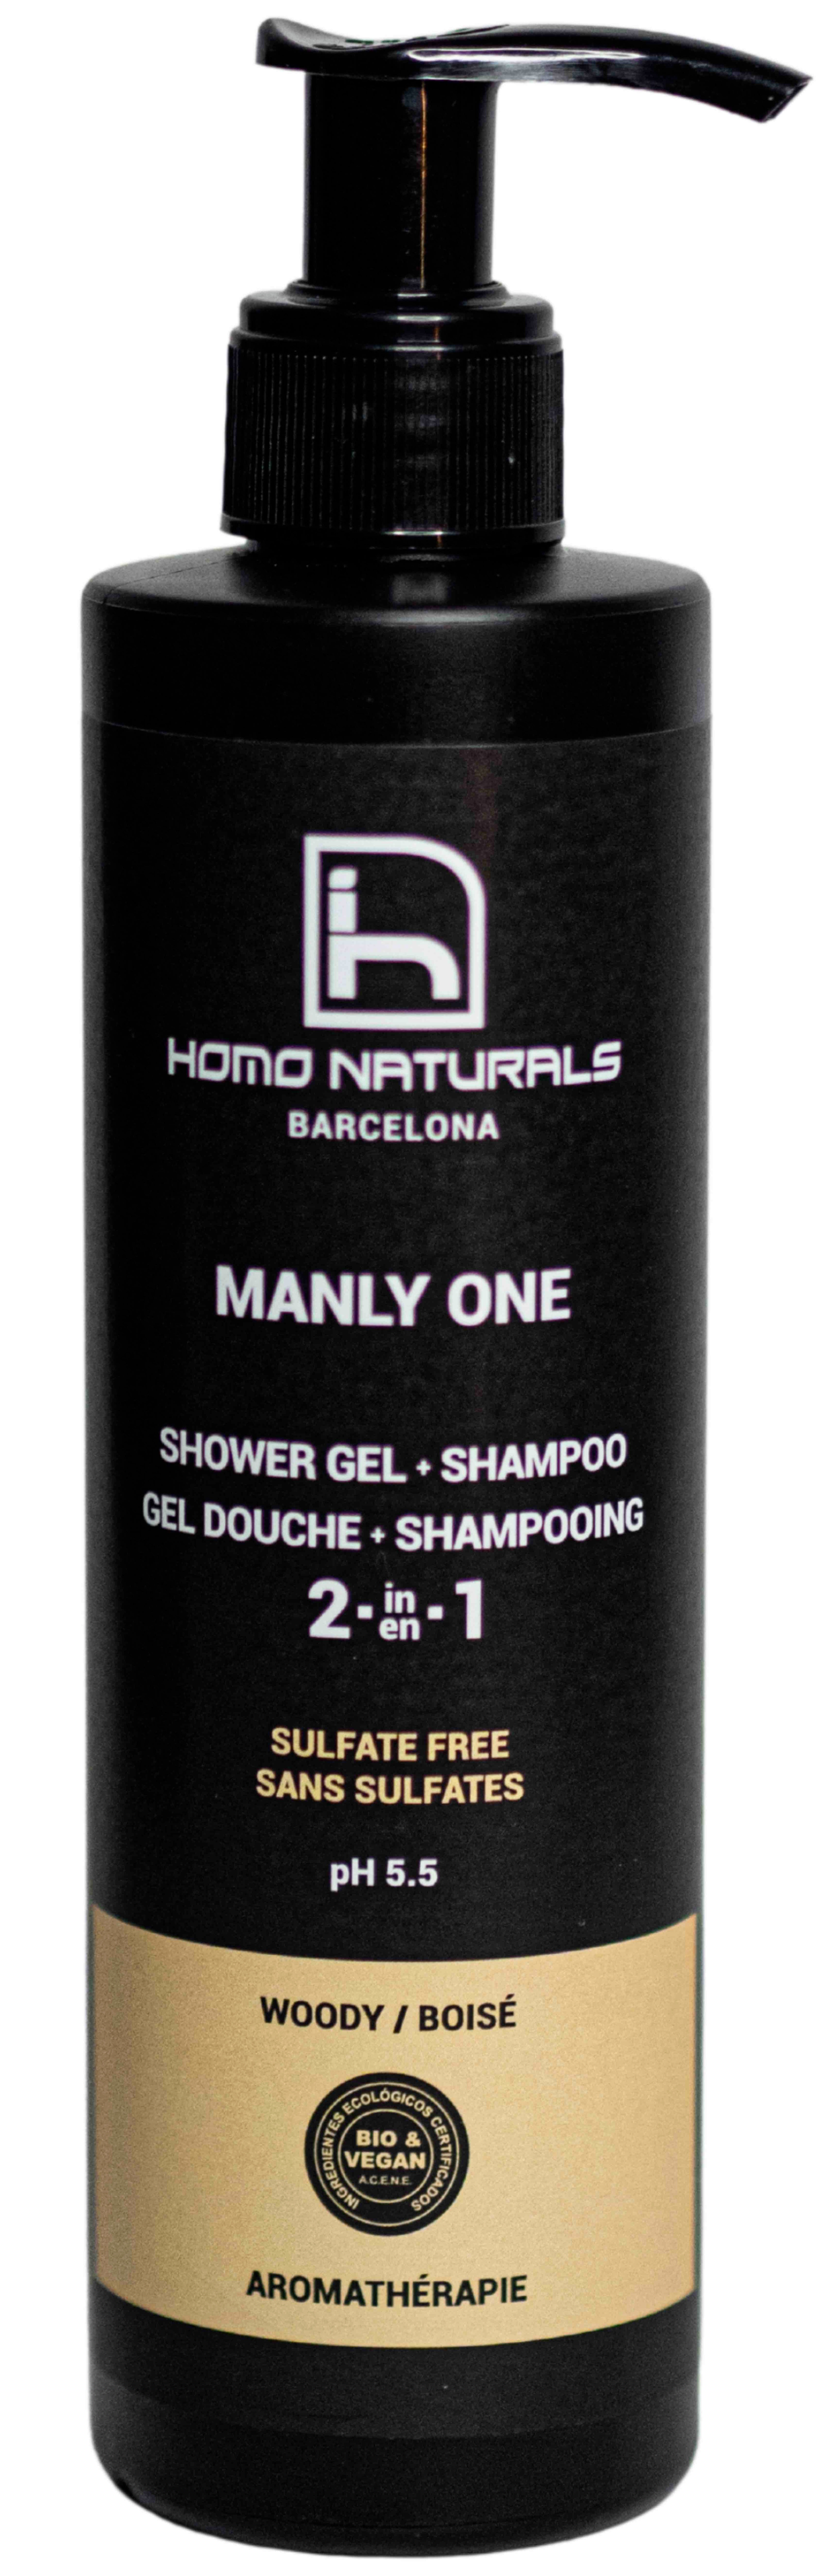 Organic shower gel for men